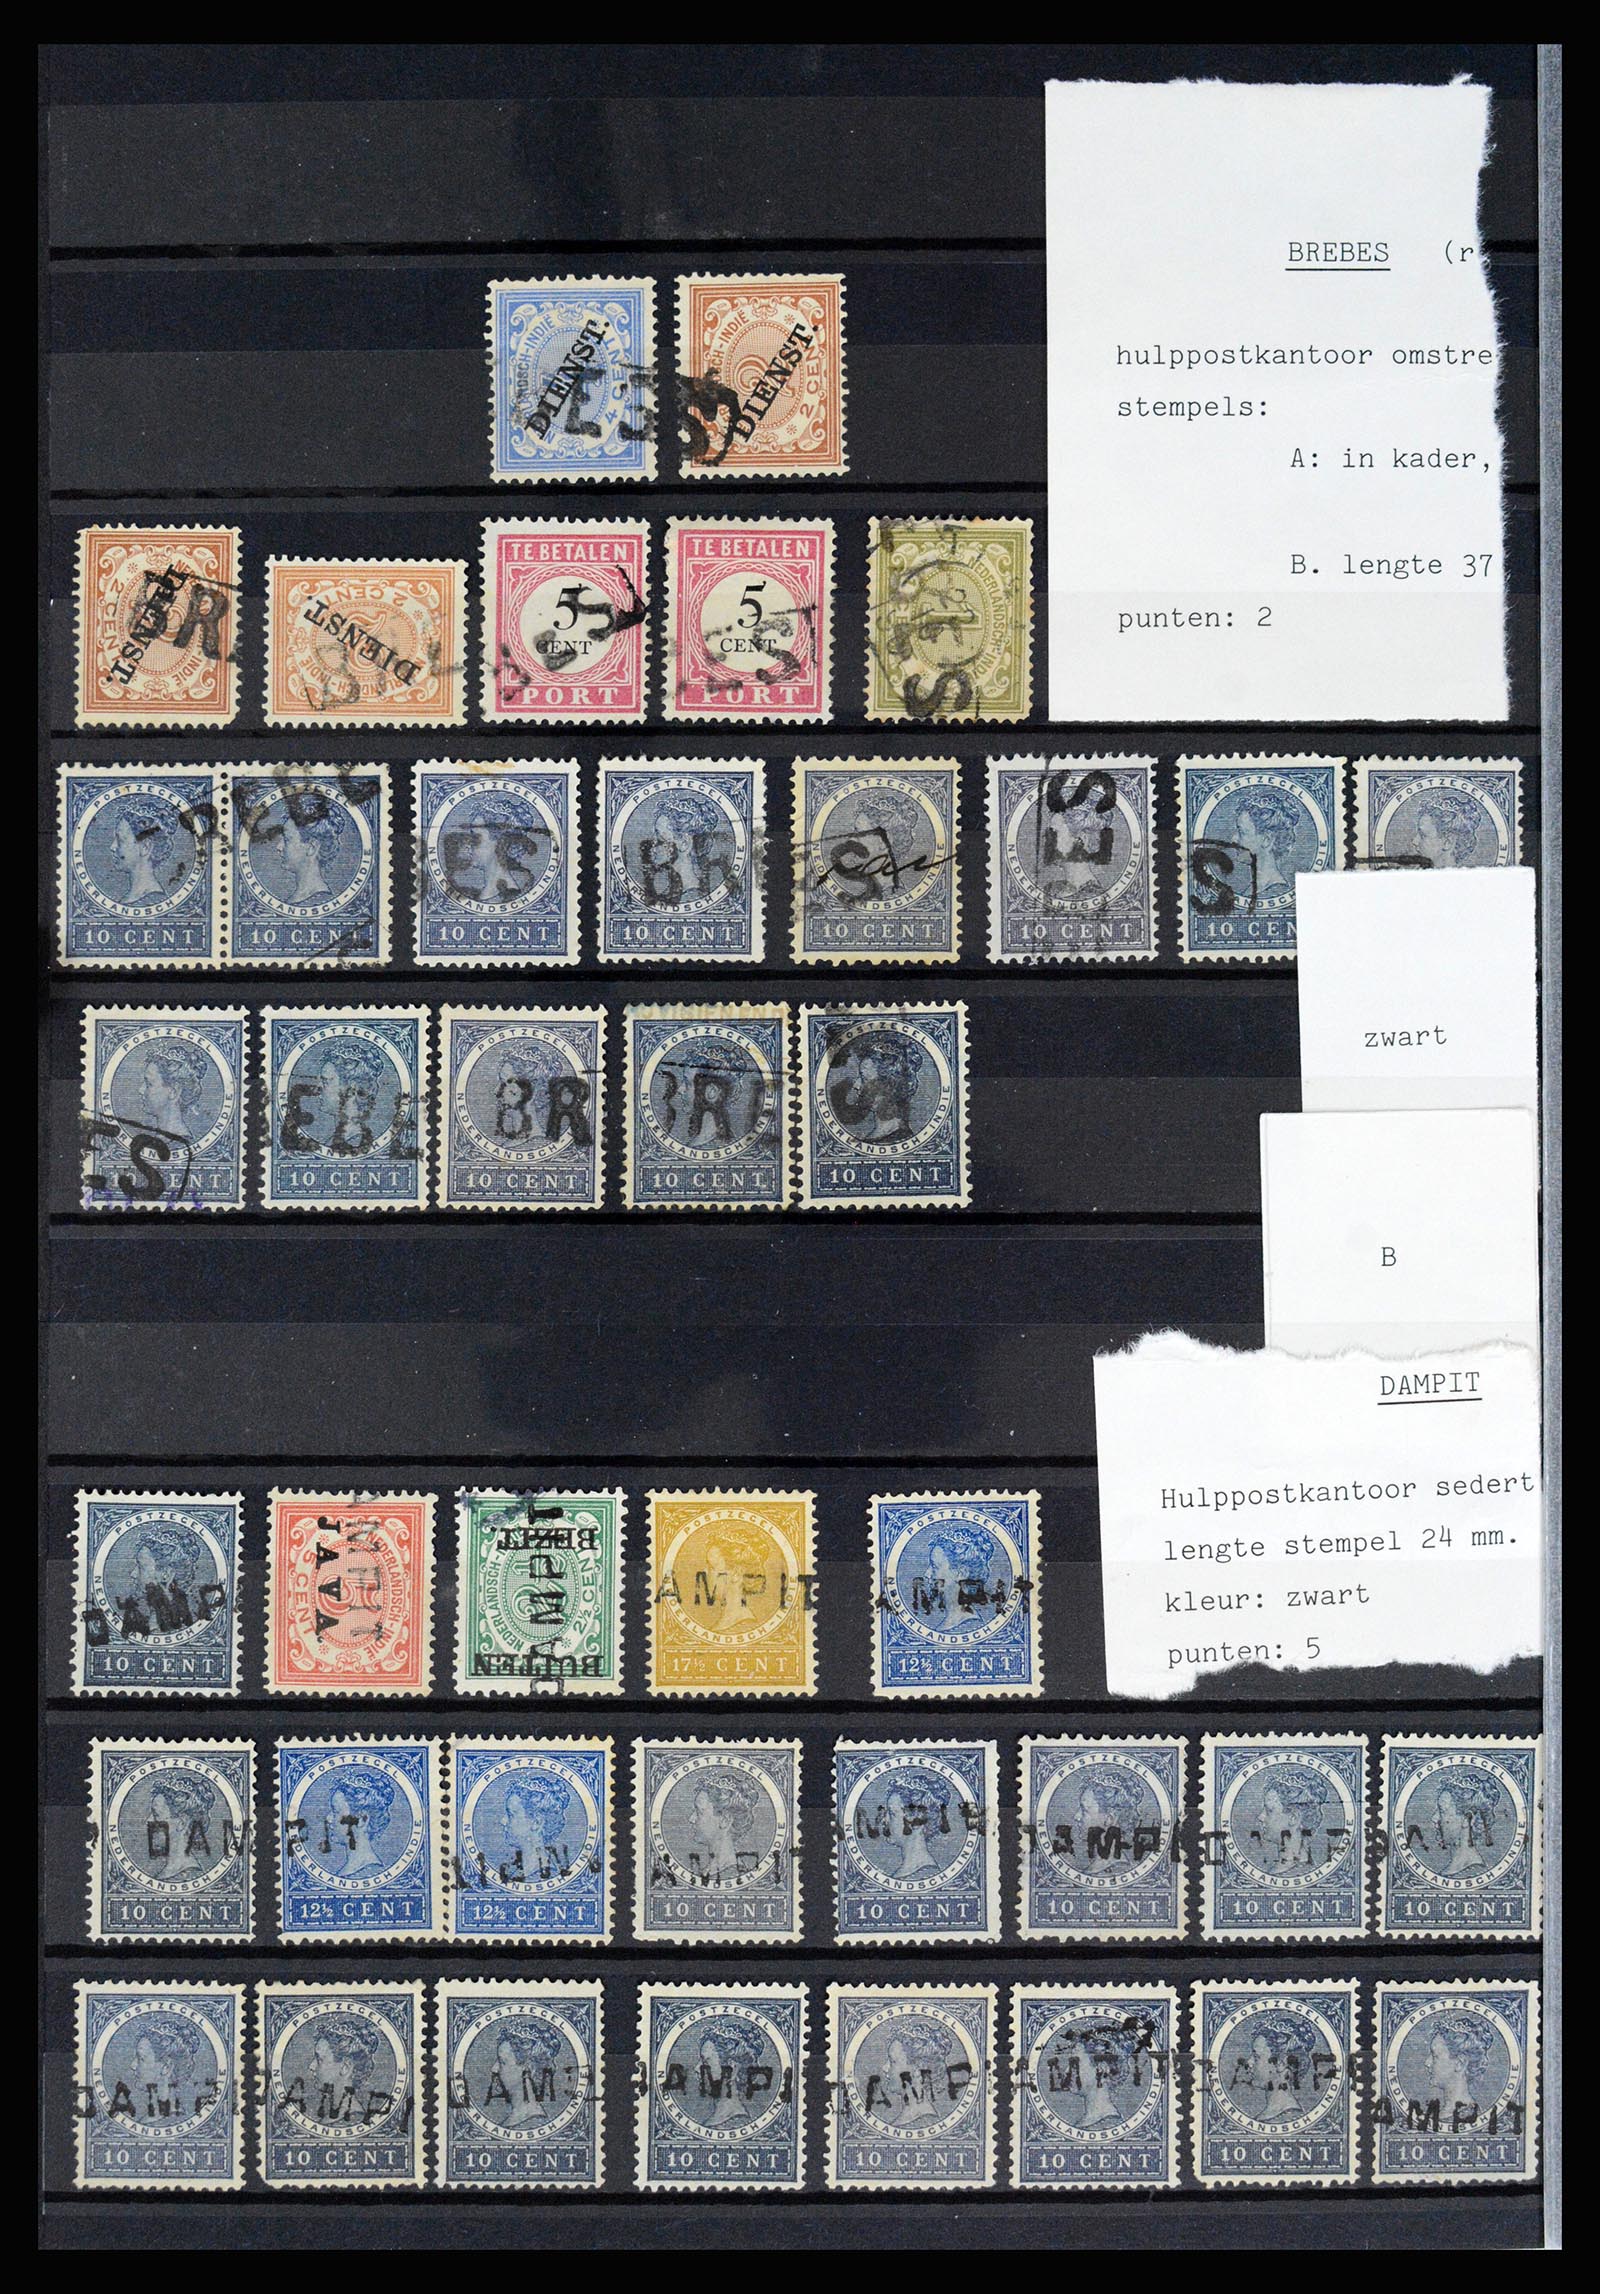 36512 022 - Stamp collection 36512 Nederlands Indië stempels 1872-1930.